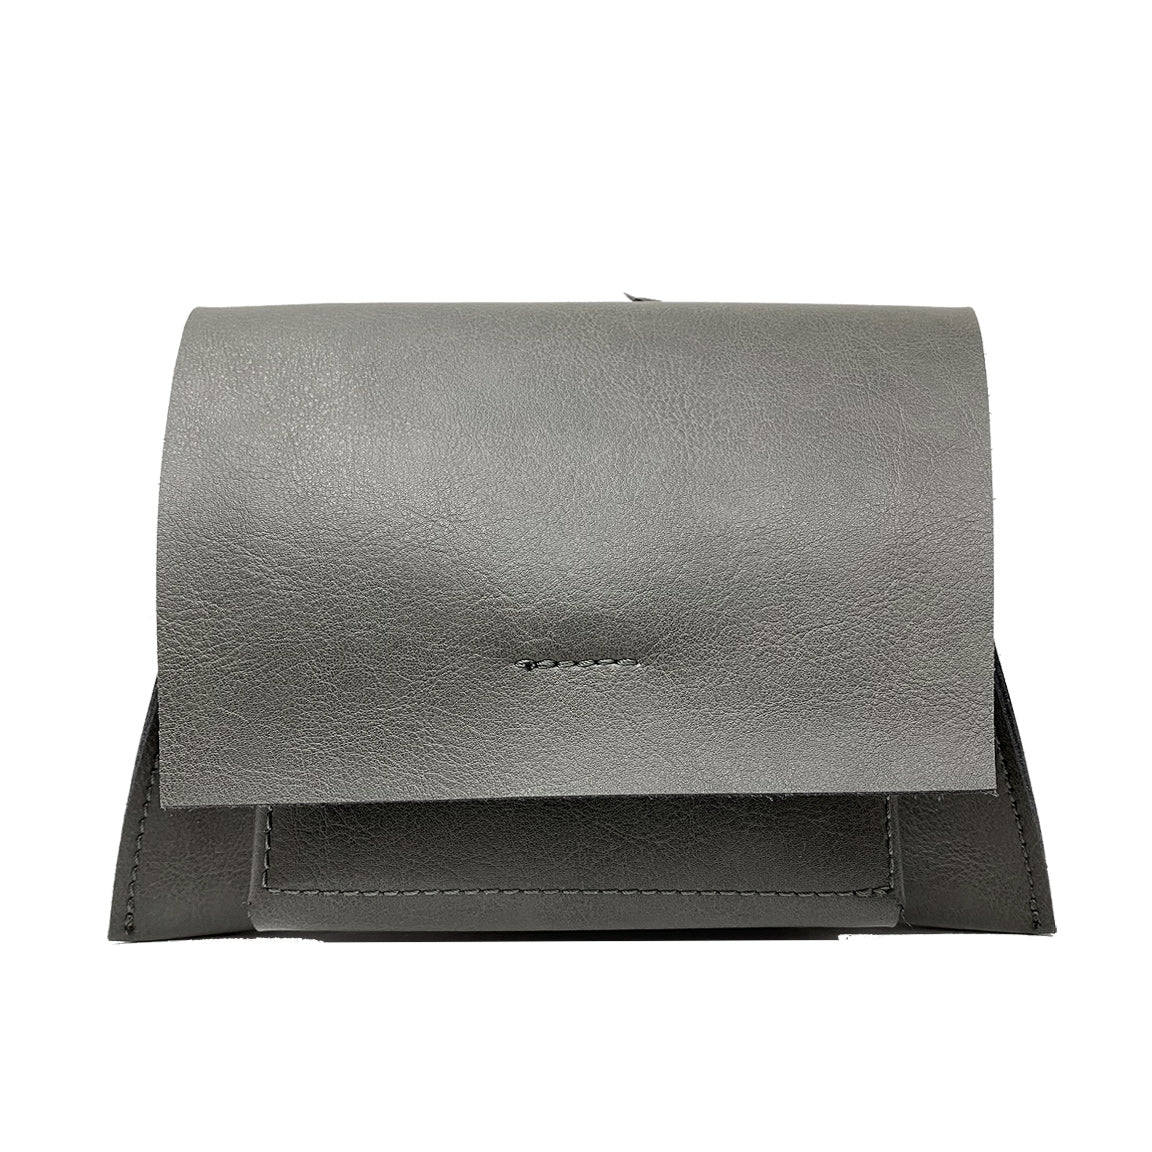 Bärn Mini - Premium Shoulder Bag from L&E Studio